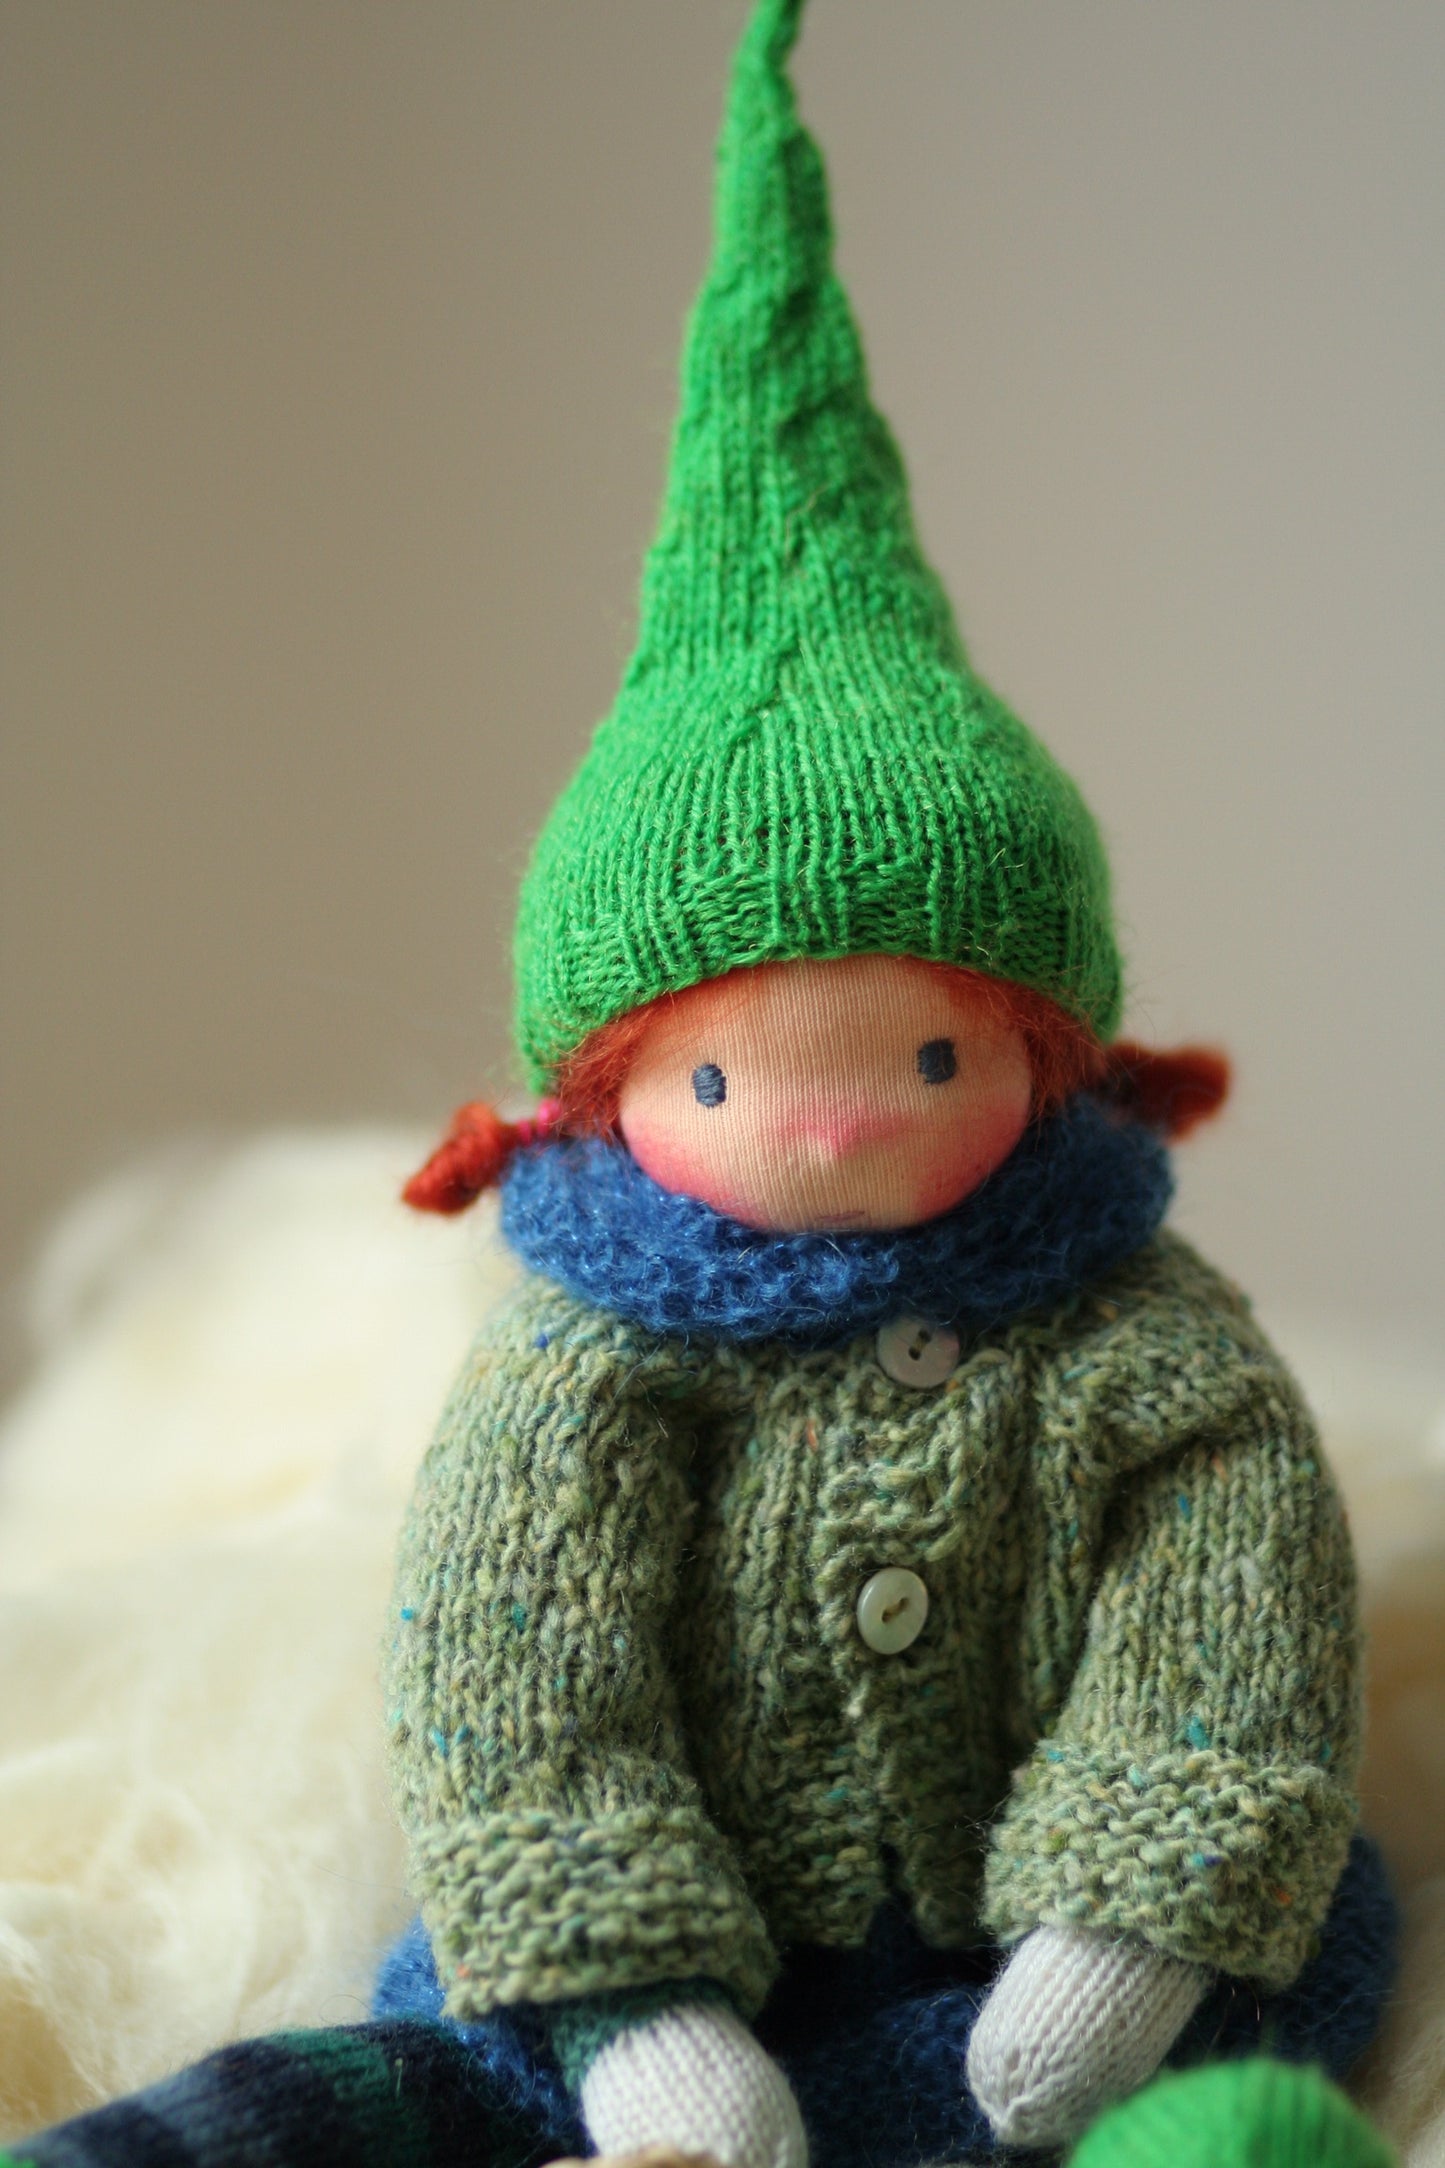 Pepita 13” Waldorf doll, Peperuda knitted doll, soft doll, art doll, handmade doll, hand knitted doll, puppen